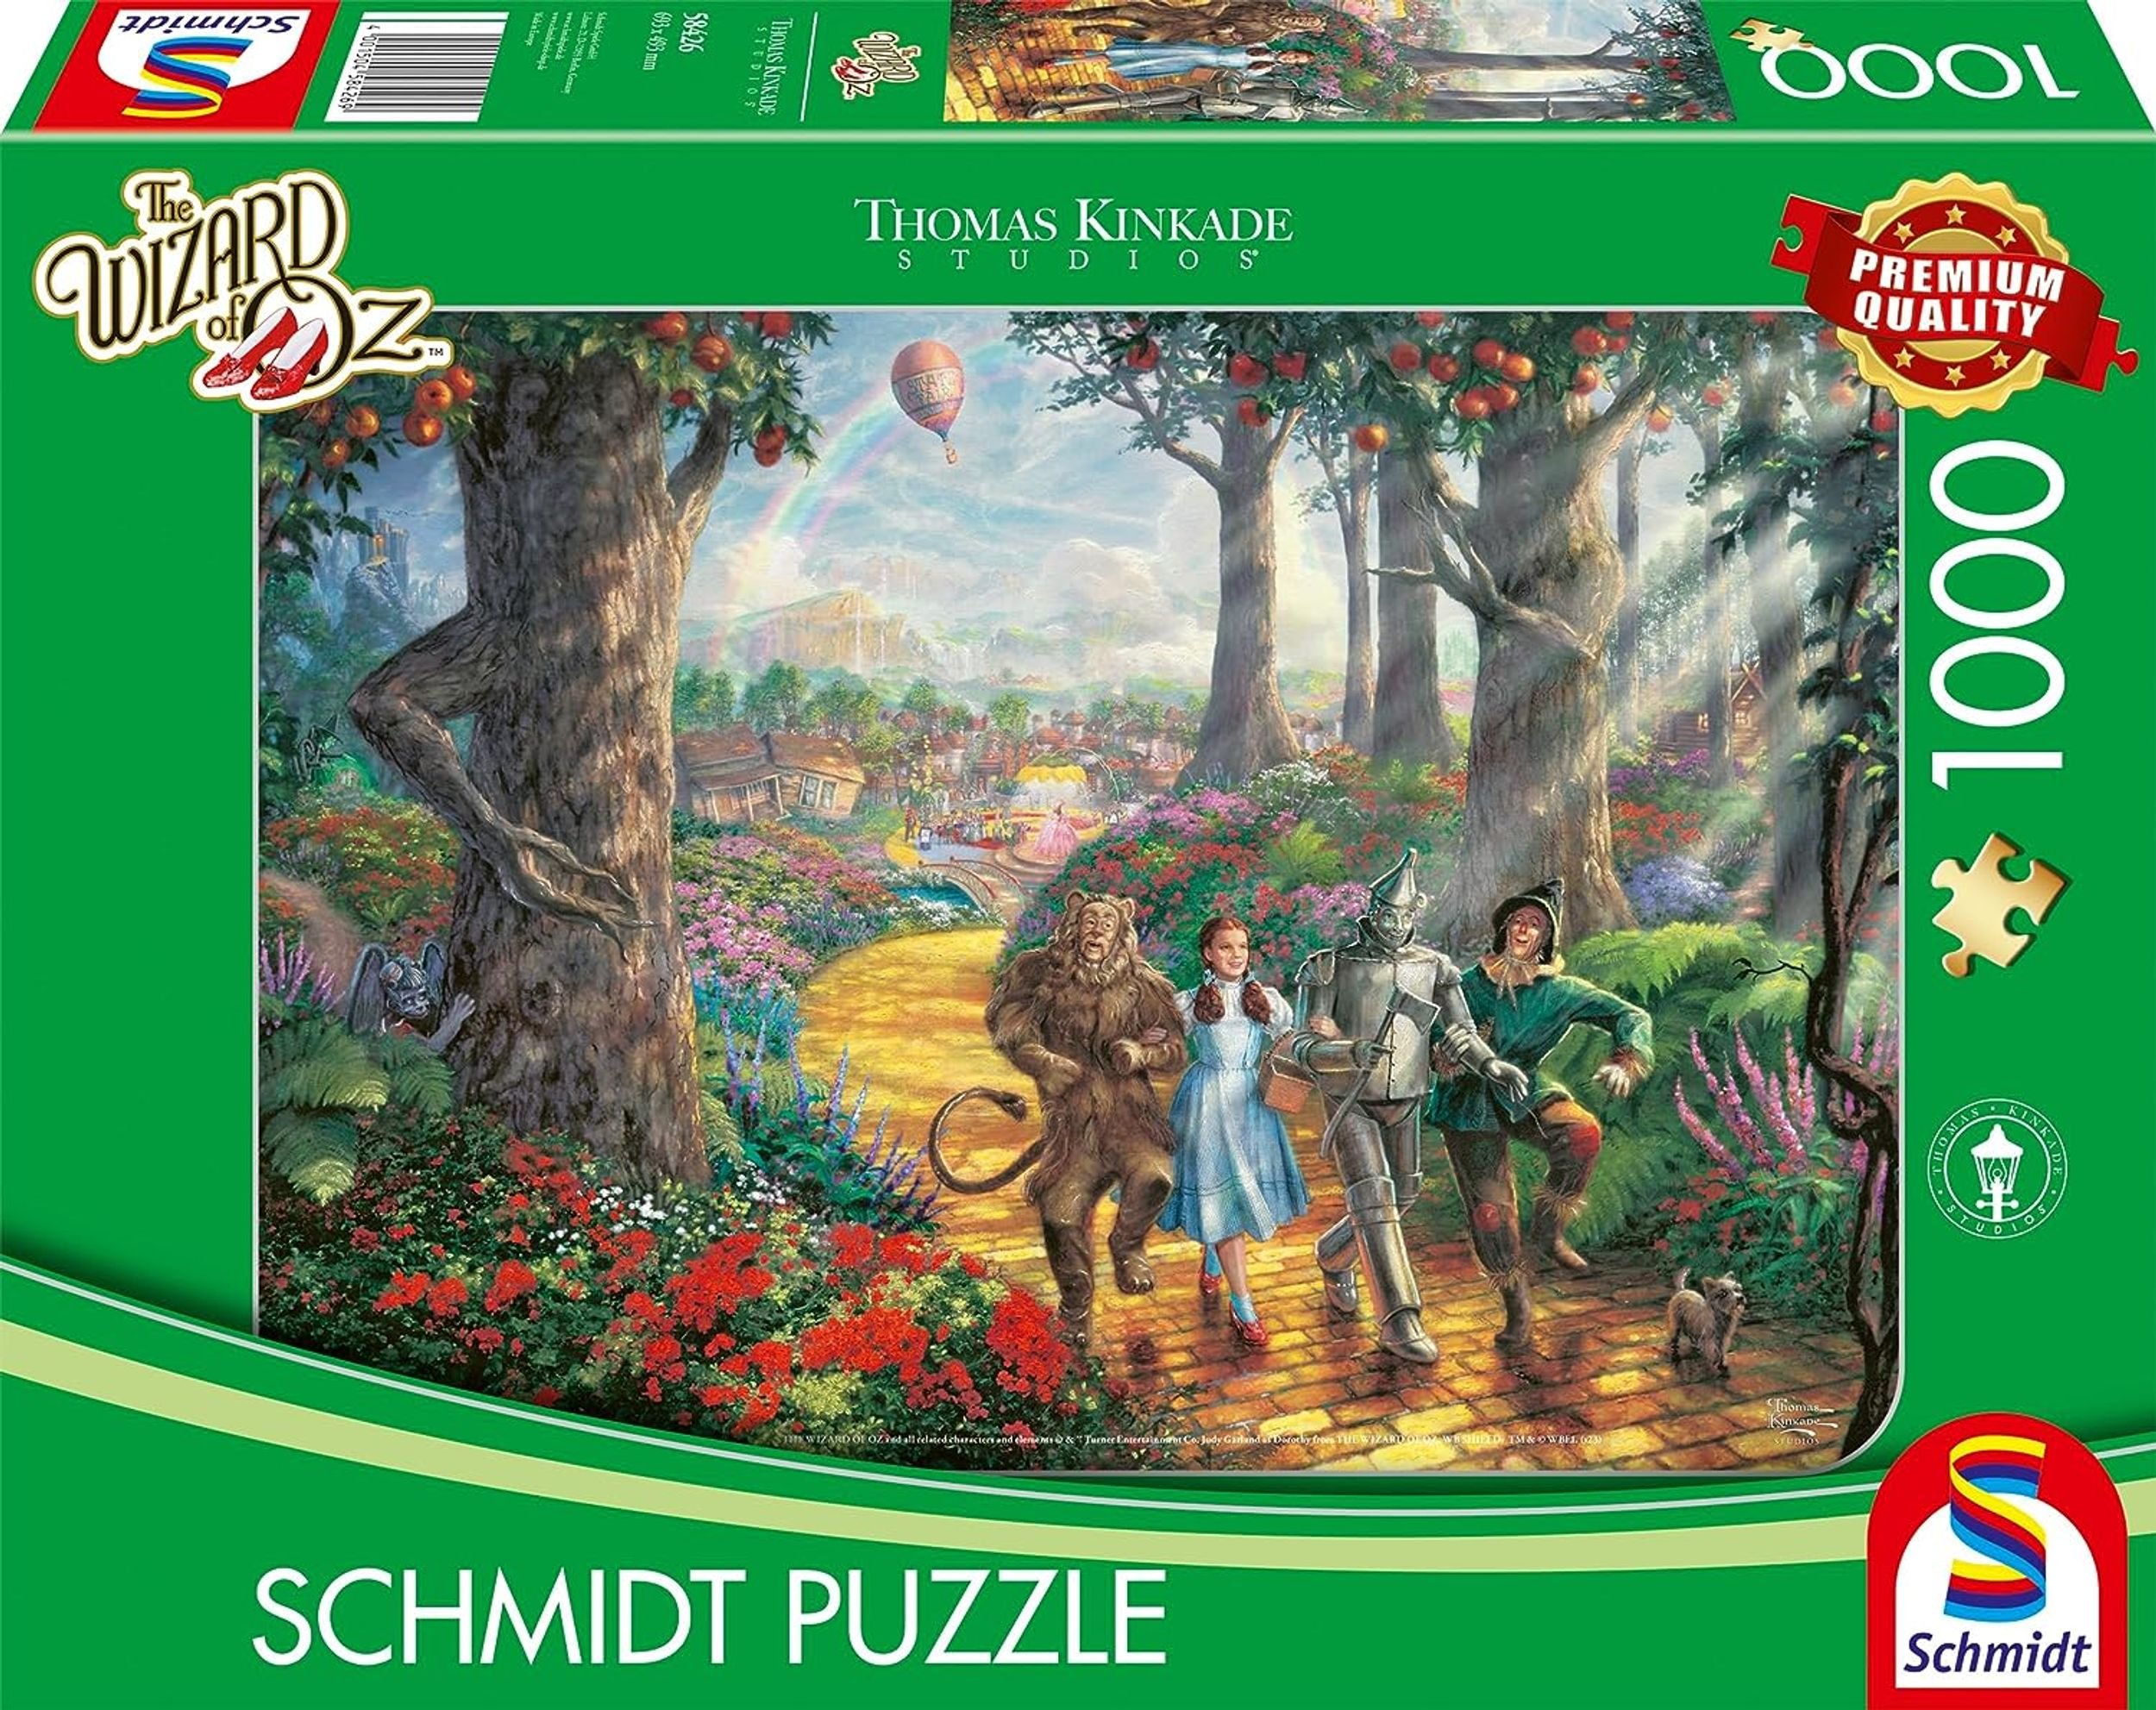 Oz Zauberer the Follow ROAD Puzzle Der YELLOW SPIELE BRICK von SCHMIDT